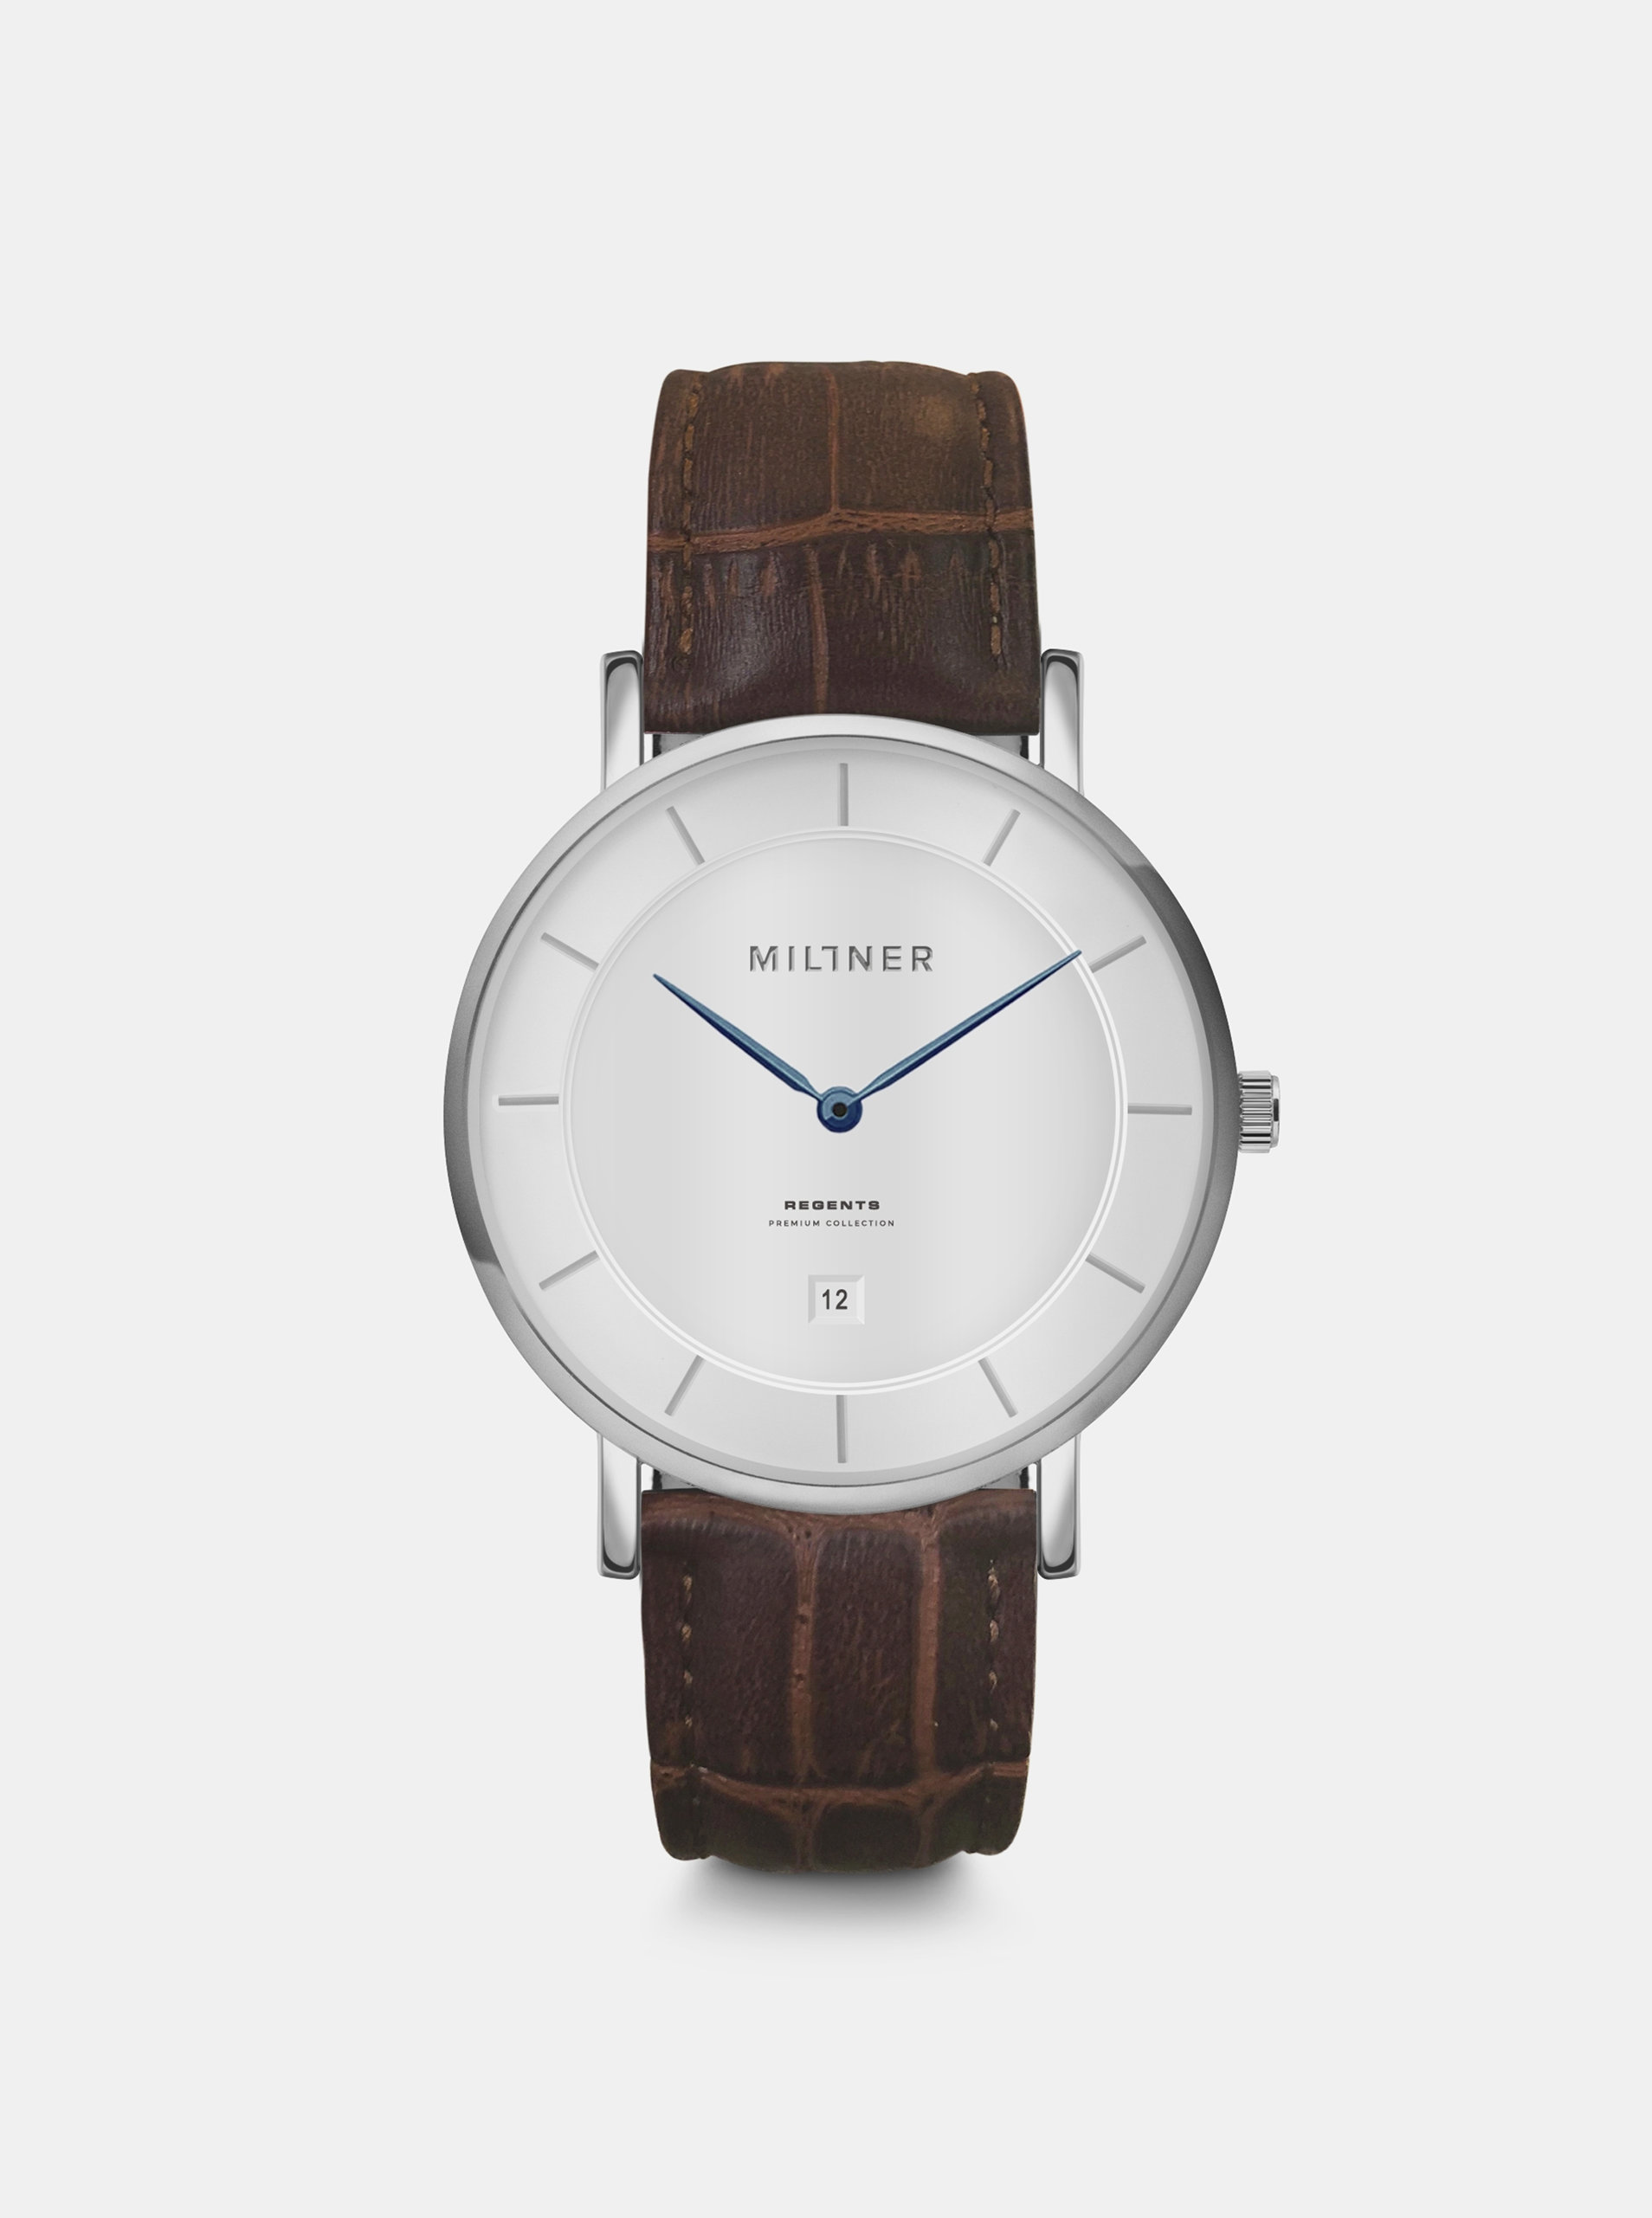 Fotografie Pánské hodinky s hnědým koženým páskem Millner Regents